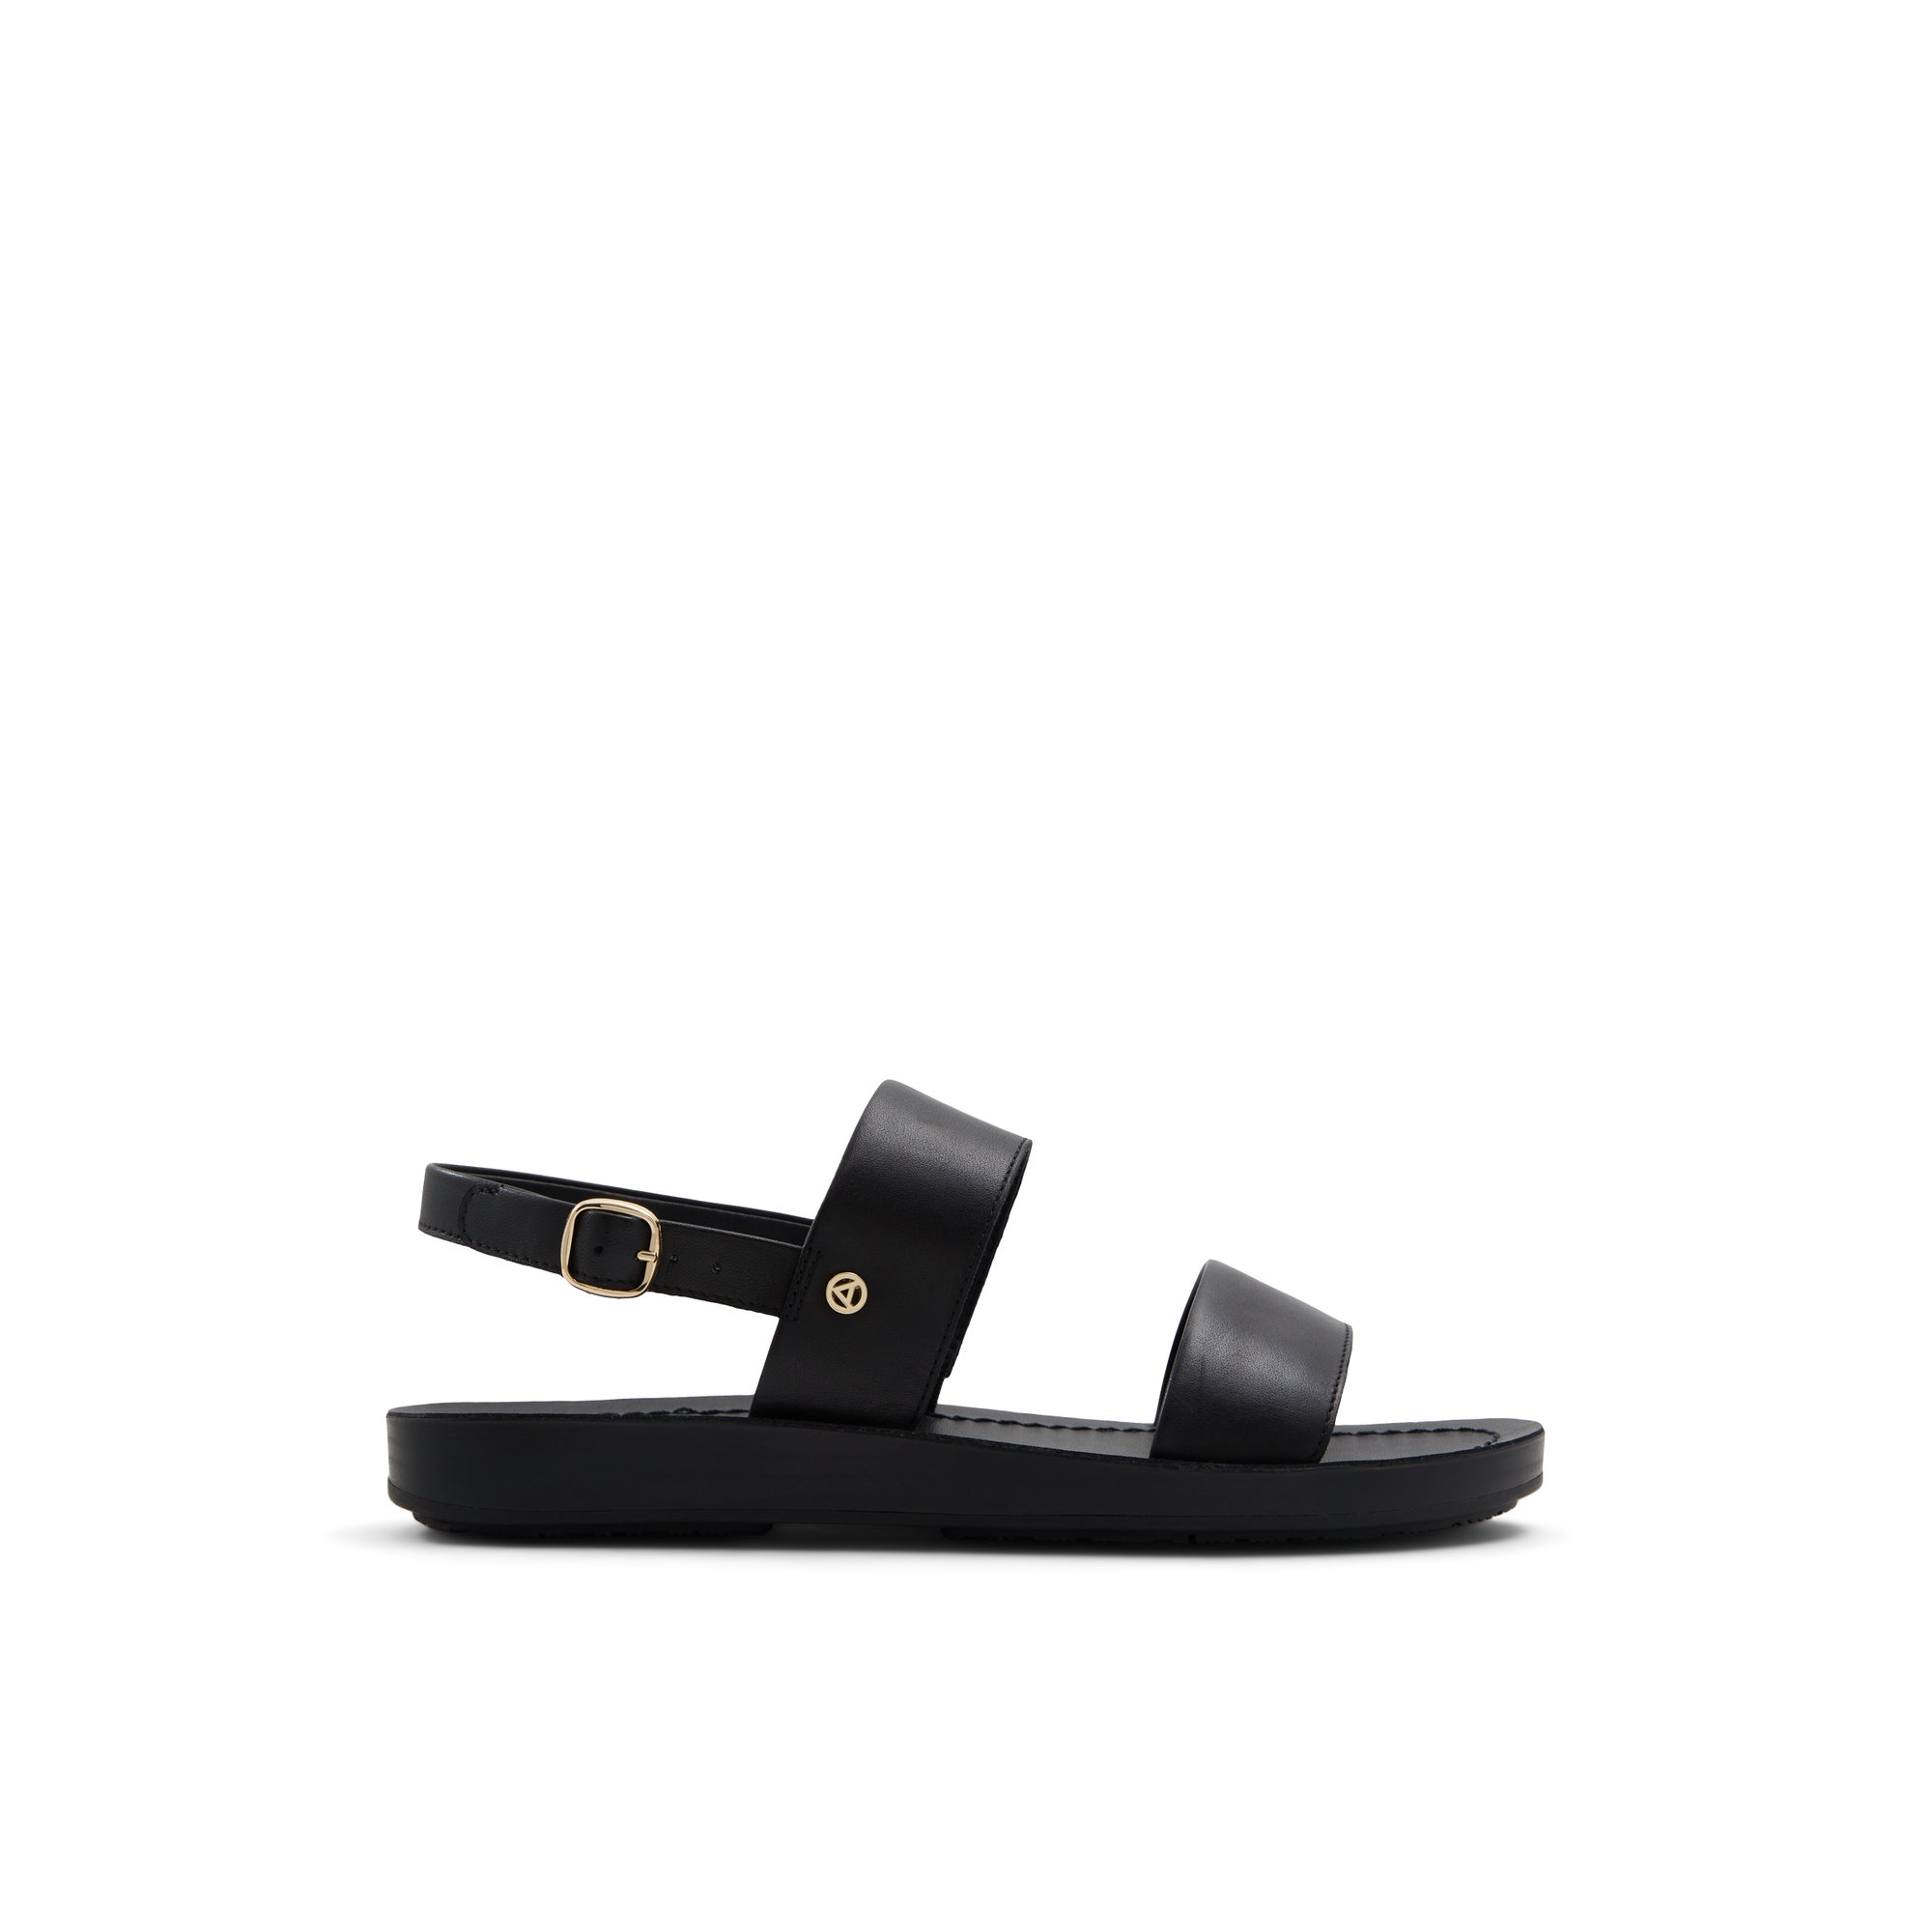 ALDO Bamaever - Women's Flat Sandals - Black